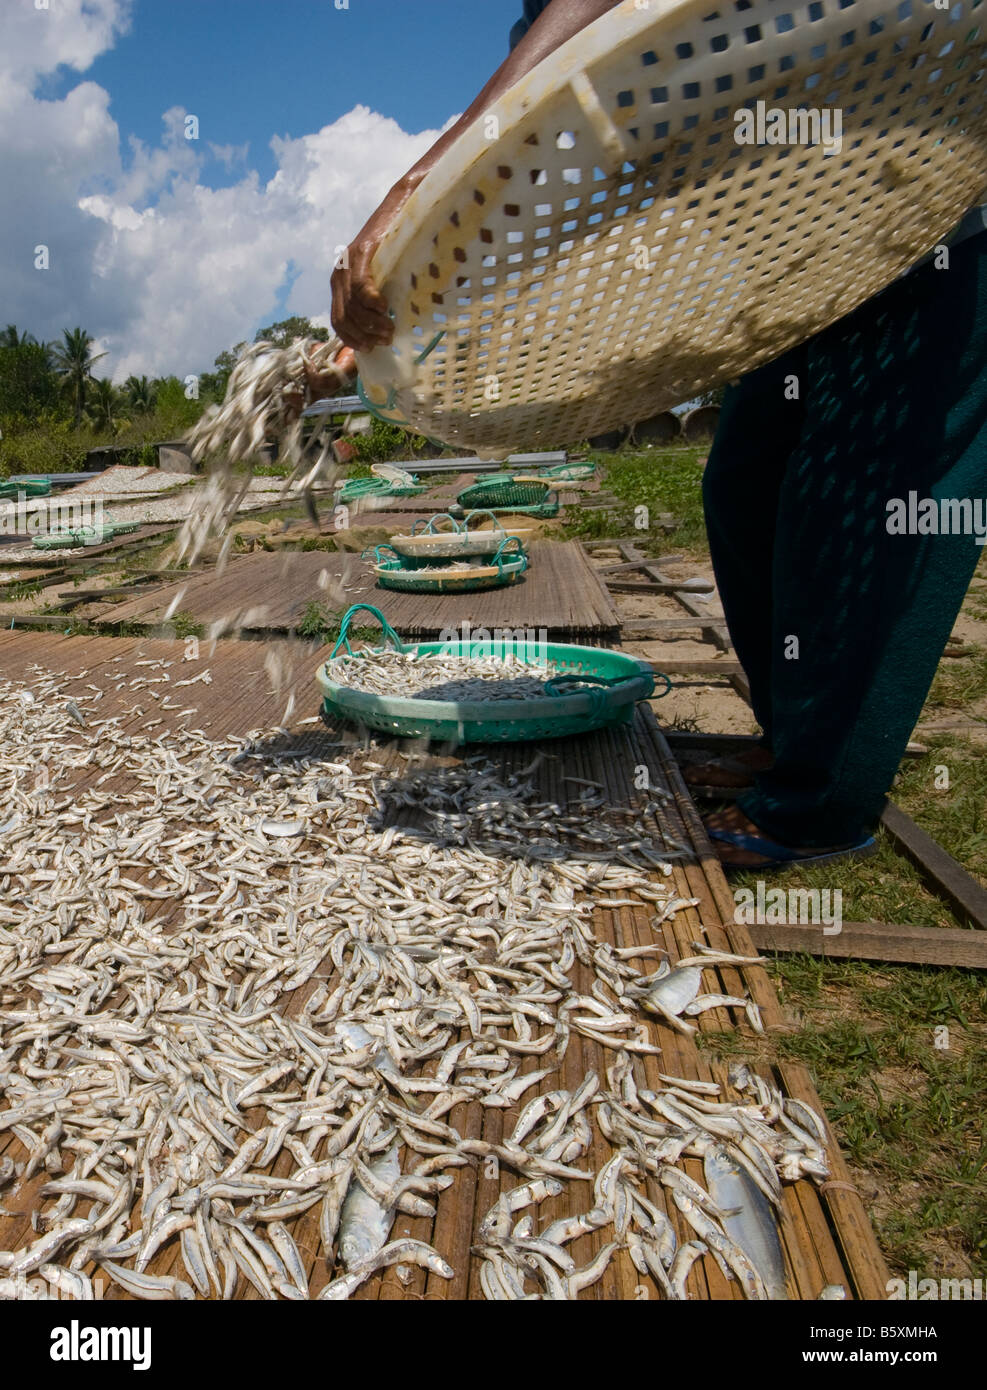 La méthode traditionnelle de séchage des anchois à Terengganu Malaisie Banque D'Images